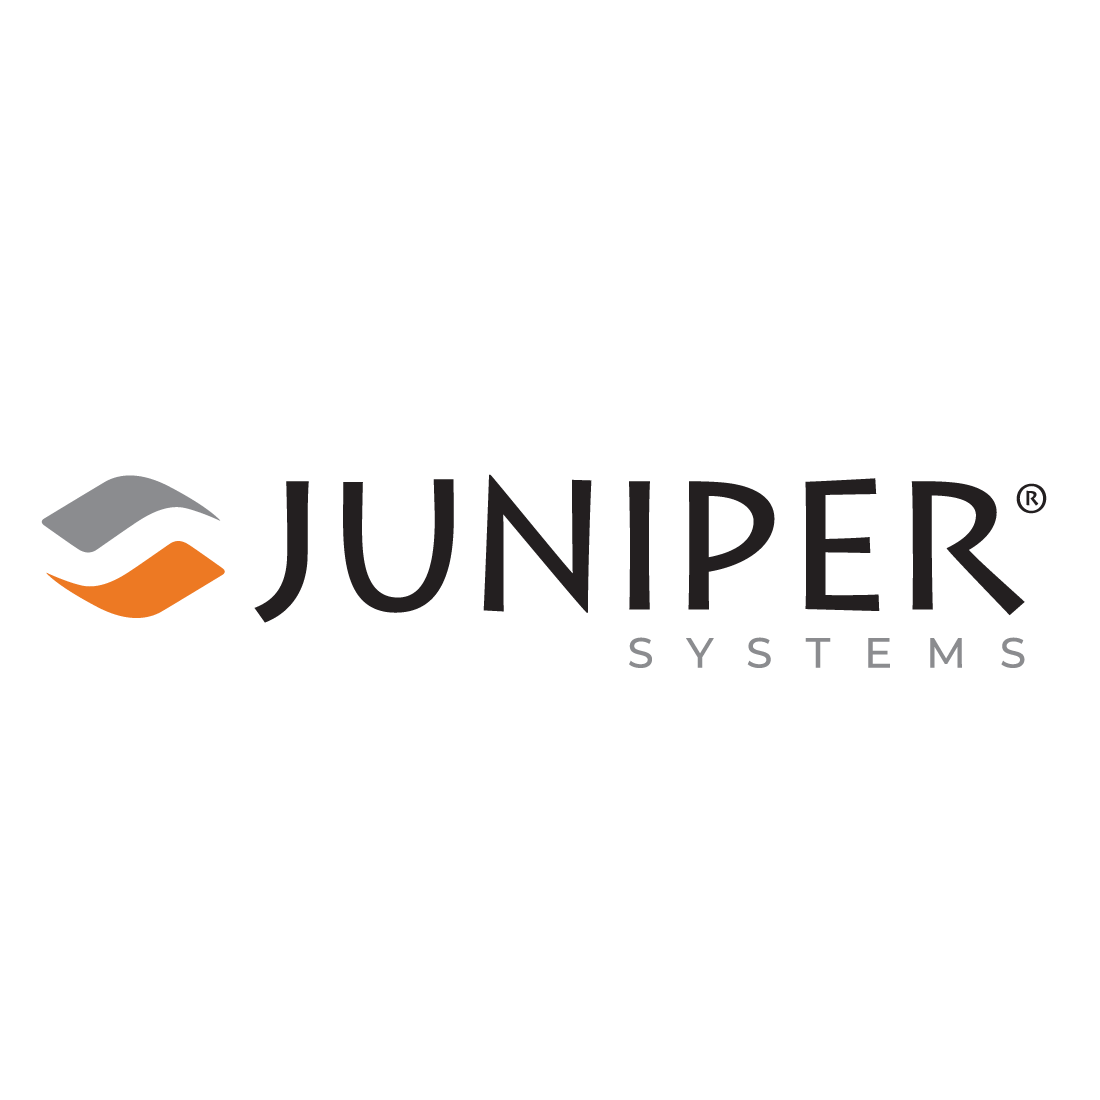 Juniper Systems Inc